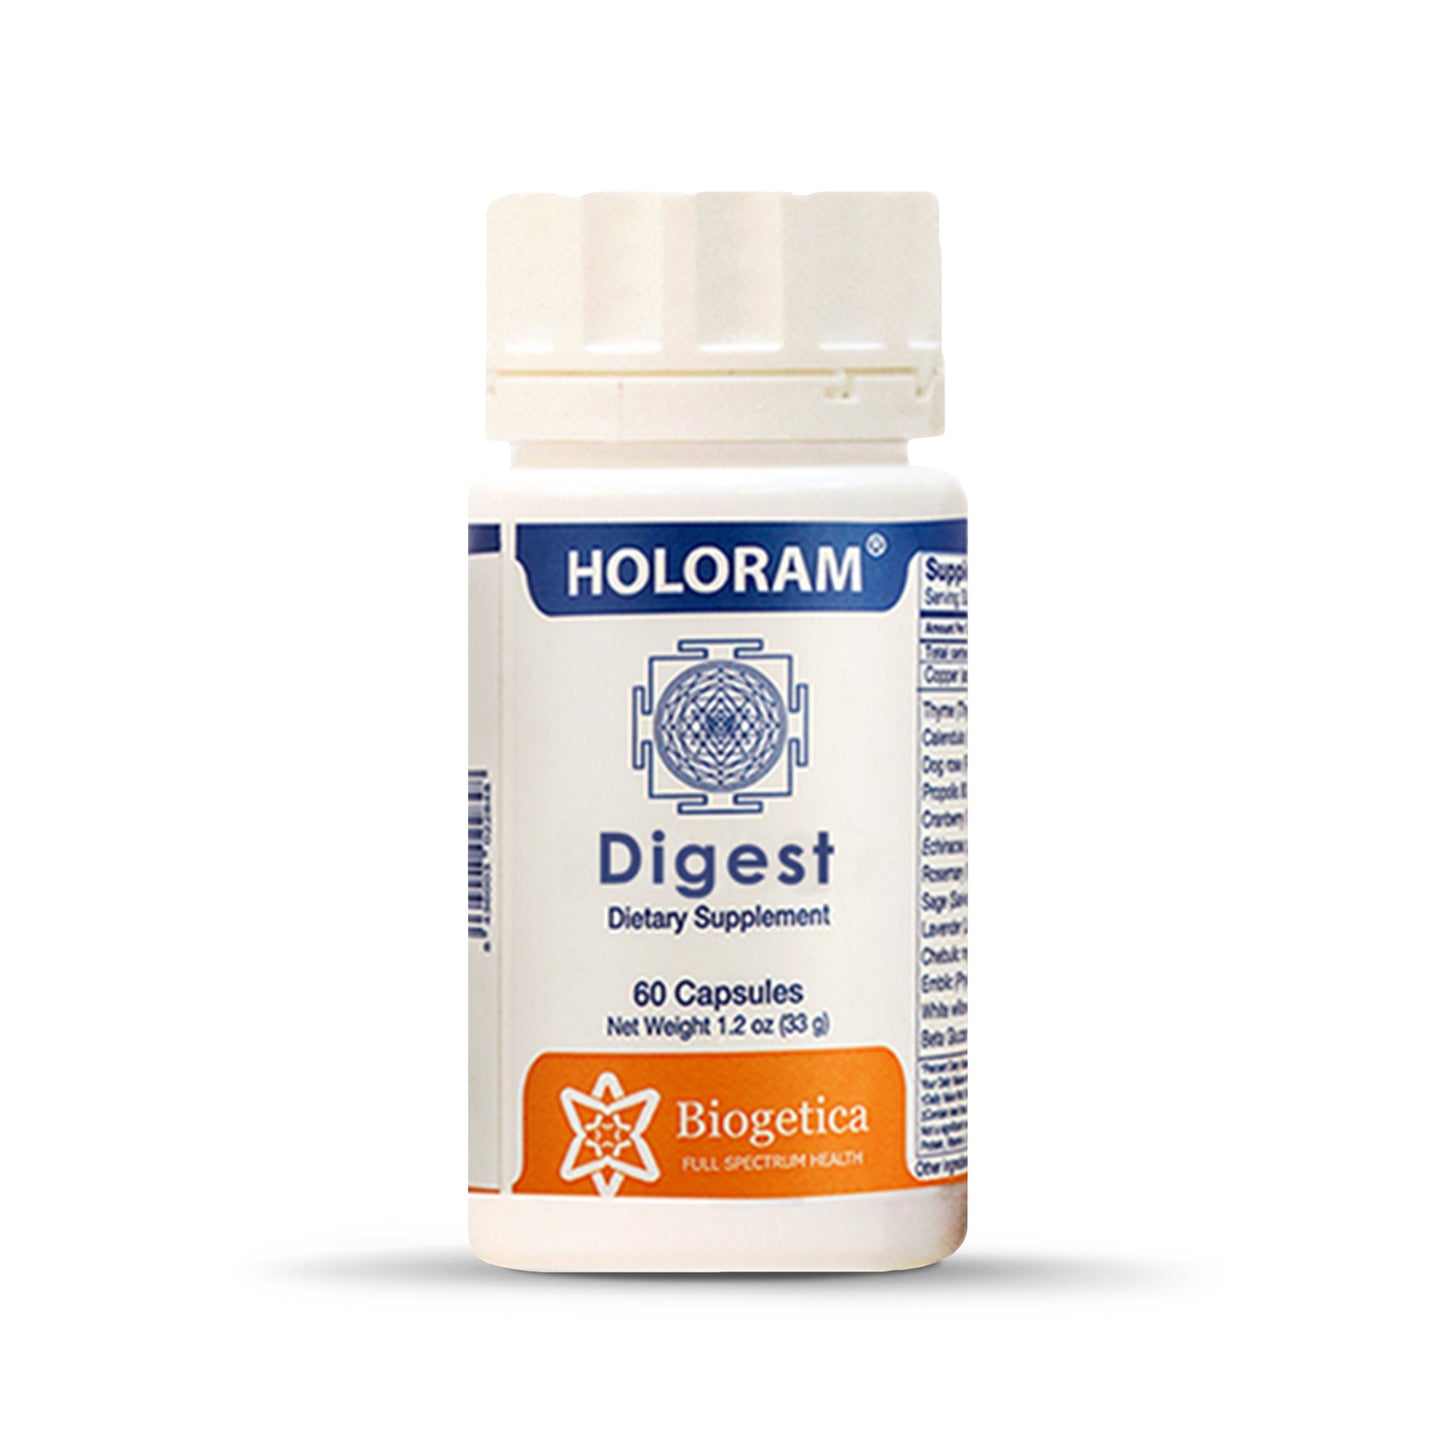 Biogetica Holoram Digest, 60 Capsules